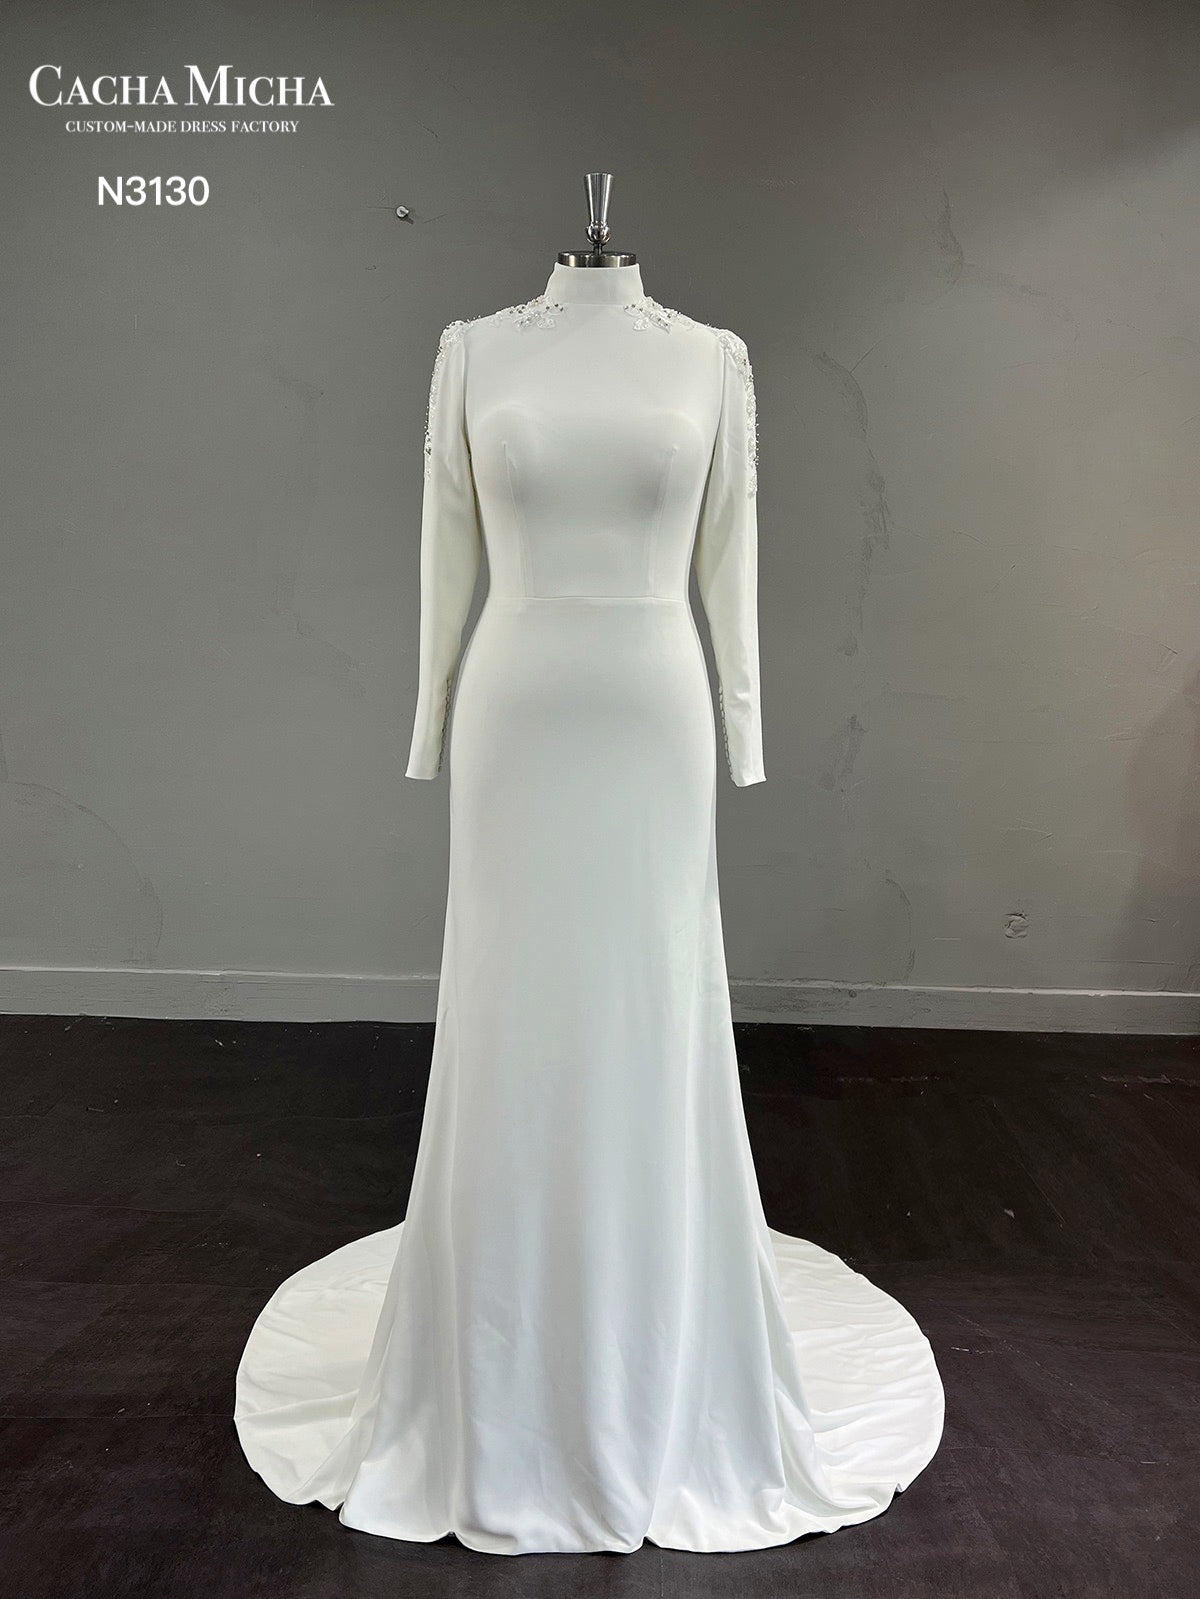 Beaded Lace High Neck Long Sleeves Crepe Muslim Wedding Dress N3130